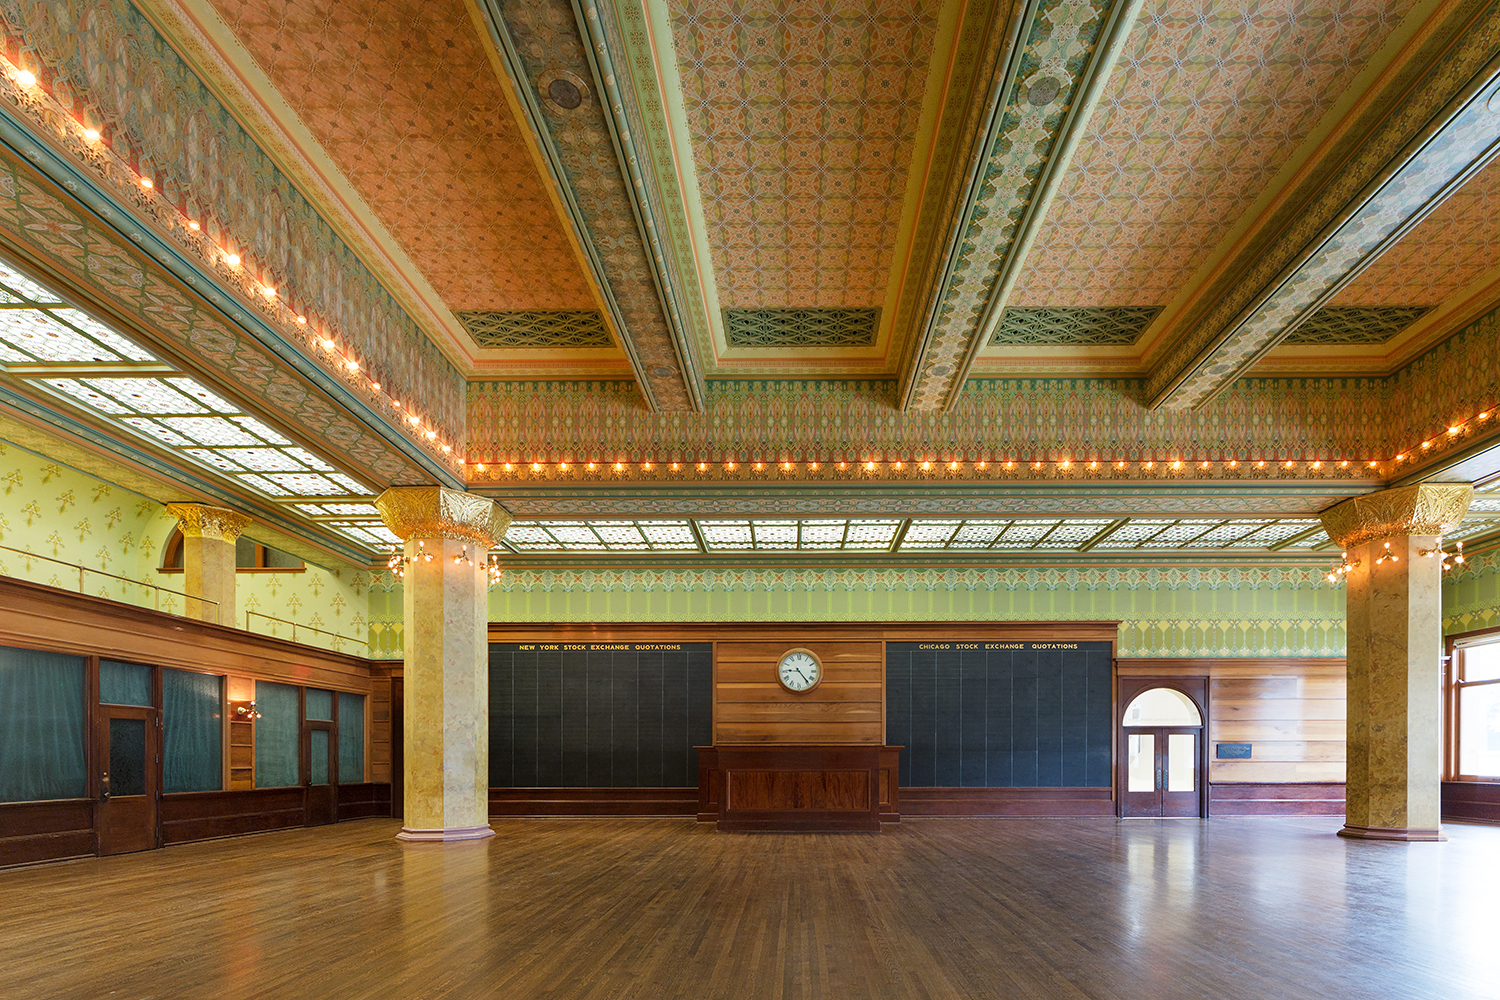 Art Institute of Chicago / Chicago Stock Exchange Trading Room / Adler & Sullivan / Restoration by John Vinci